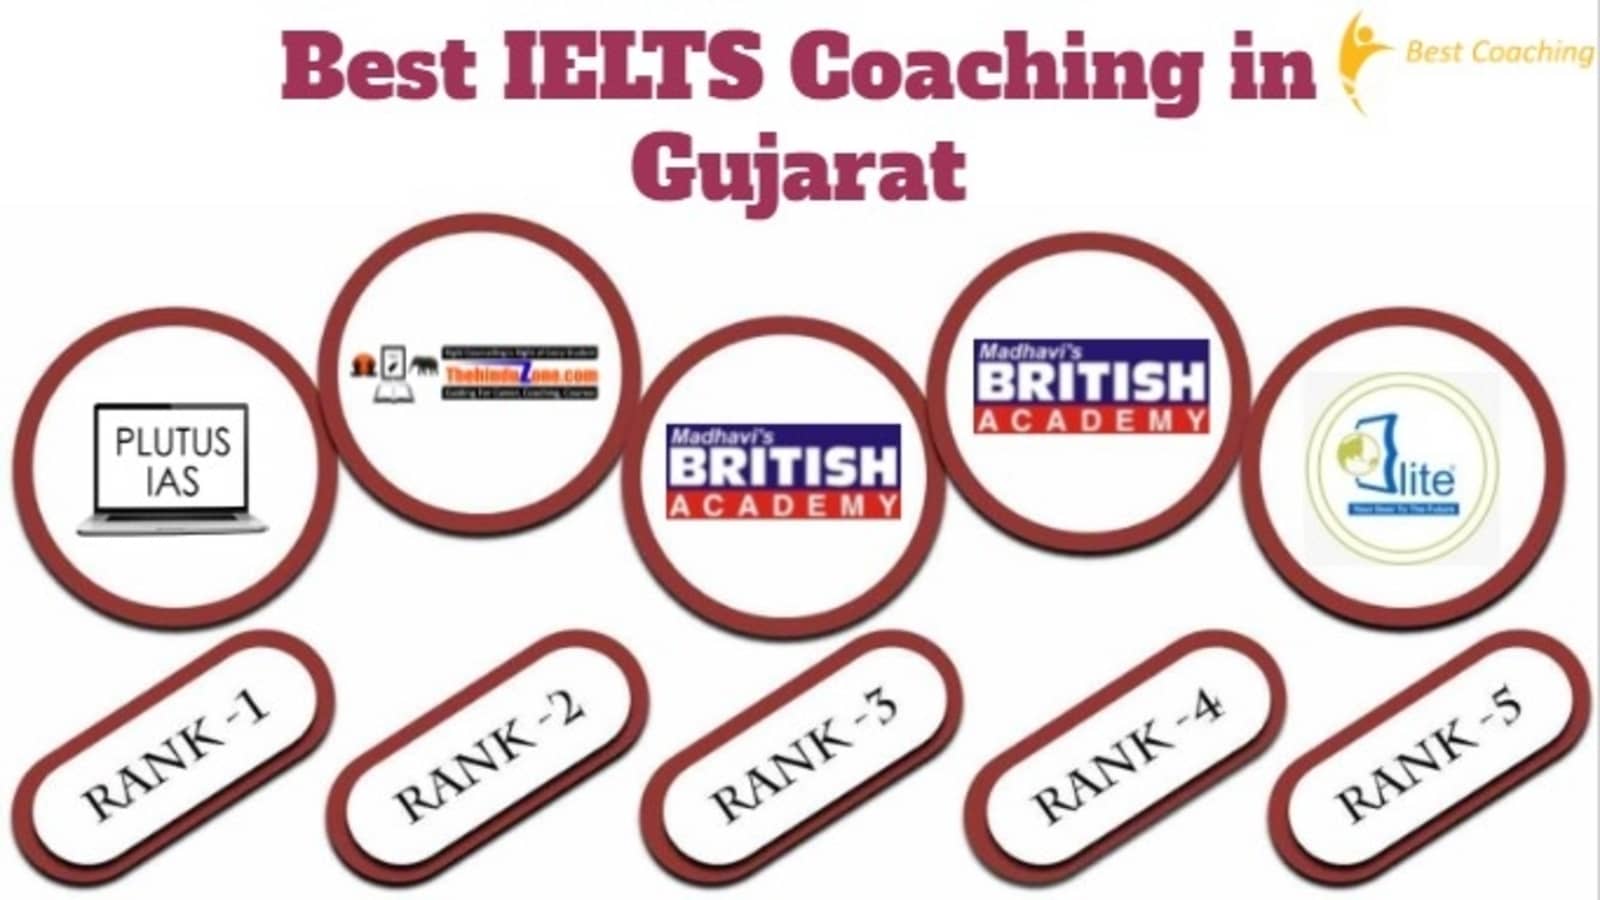 Best IELTS Coaching Institute in Gujarat